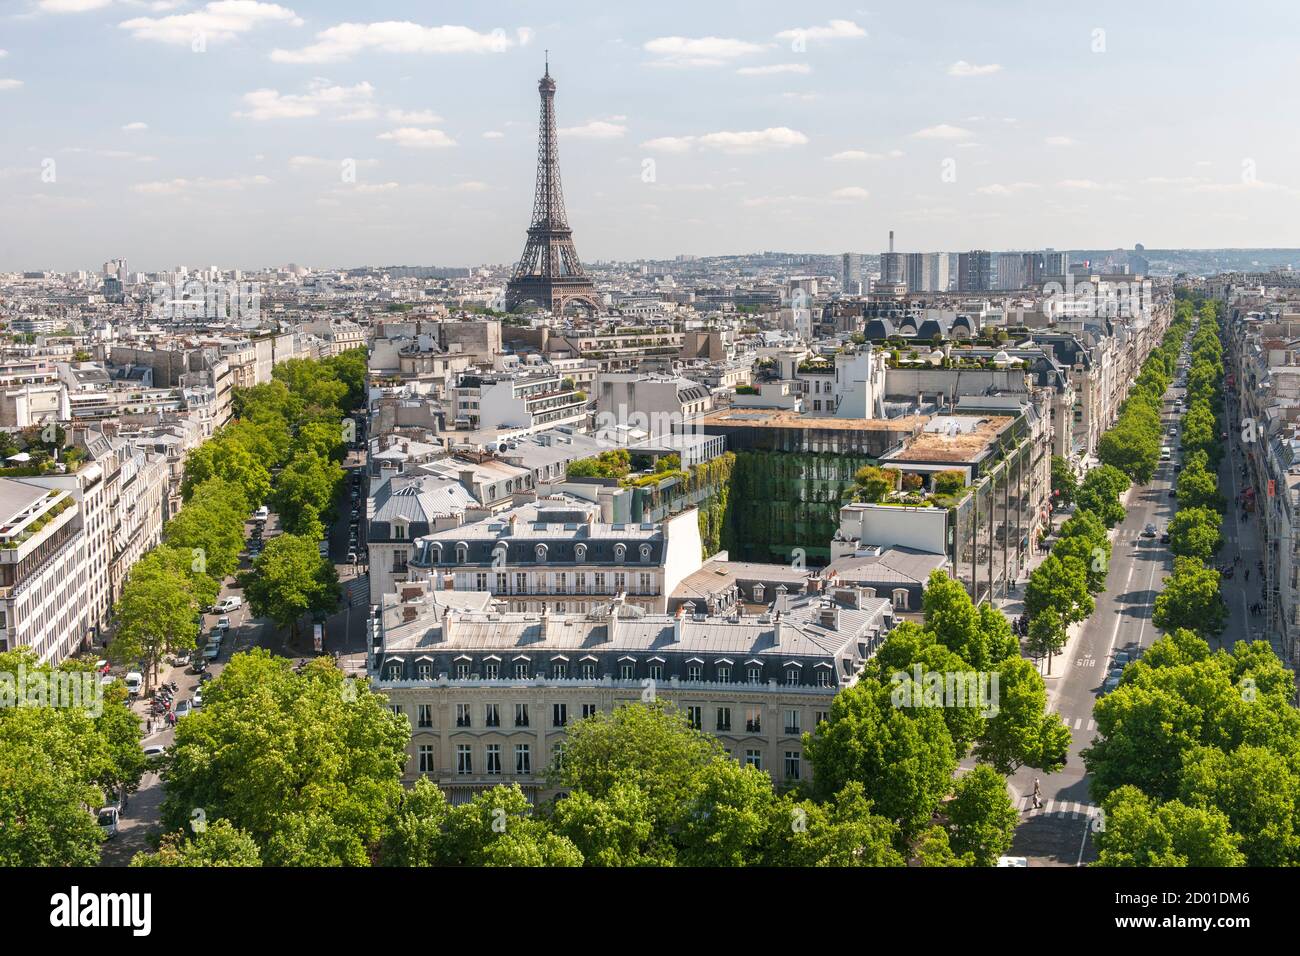 Vista a través de París desde la cima del Arco del Triunfo. La avenida d'Iéna corre a la izquierda y la avenida Kléber a la derecha de la imagen. Foto de stock